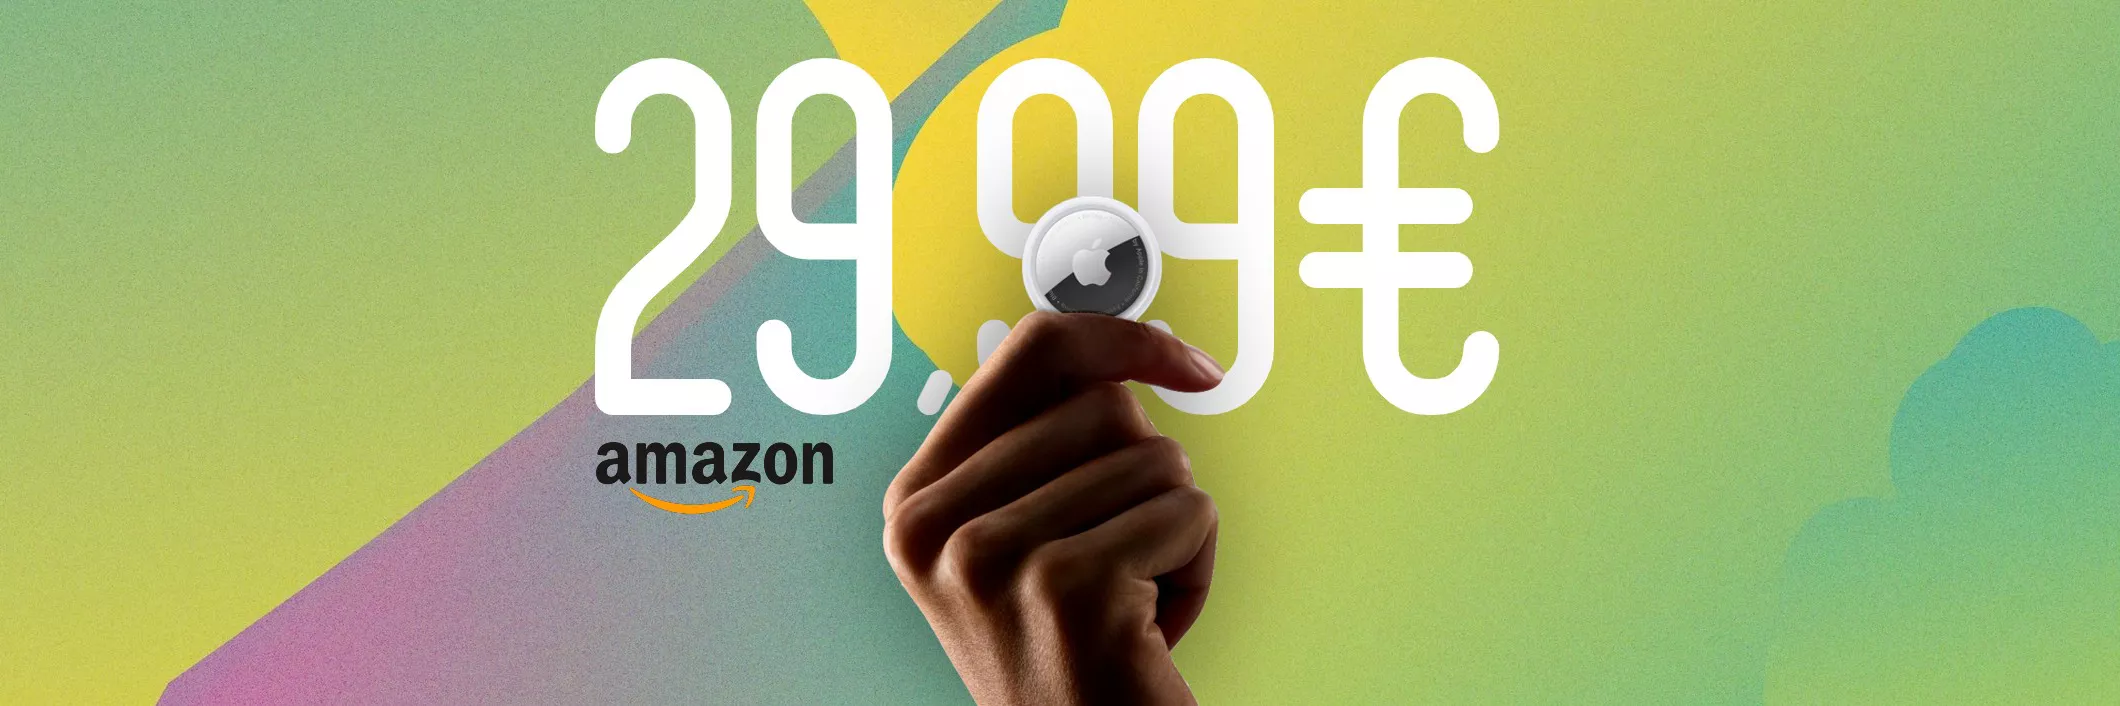 AirTag, il Kit da 4 torna in SCONTO su Amazon: ACQUISTALO a 29€ l'uno!